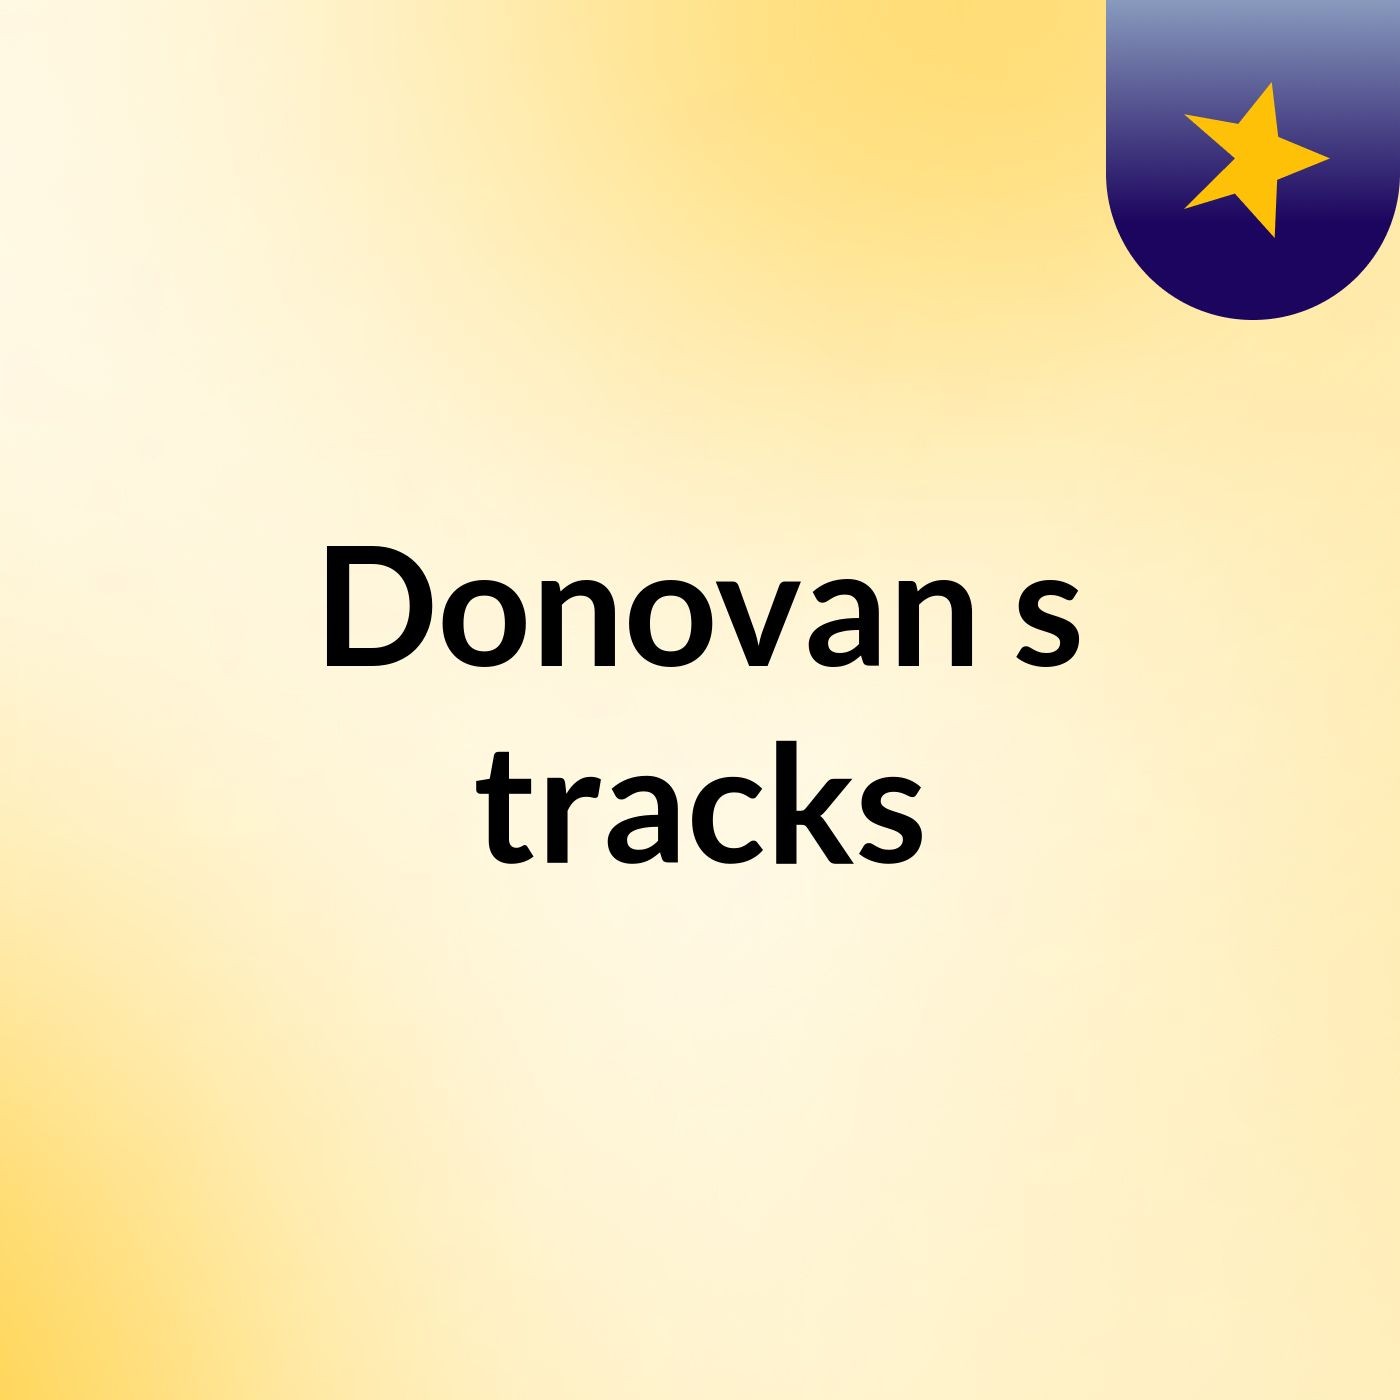 Donovan's tracks